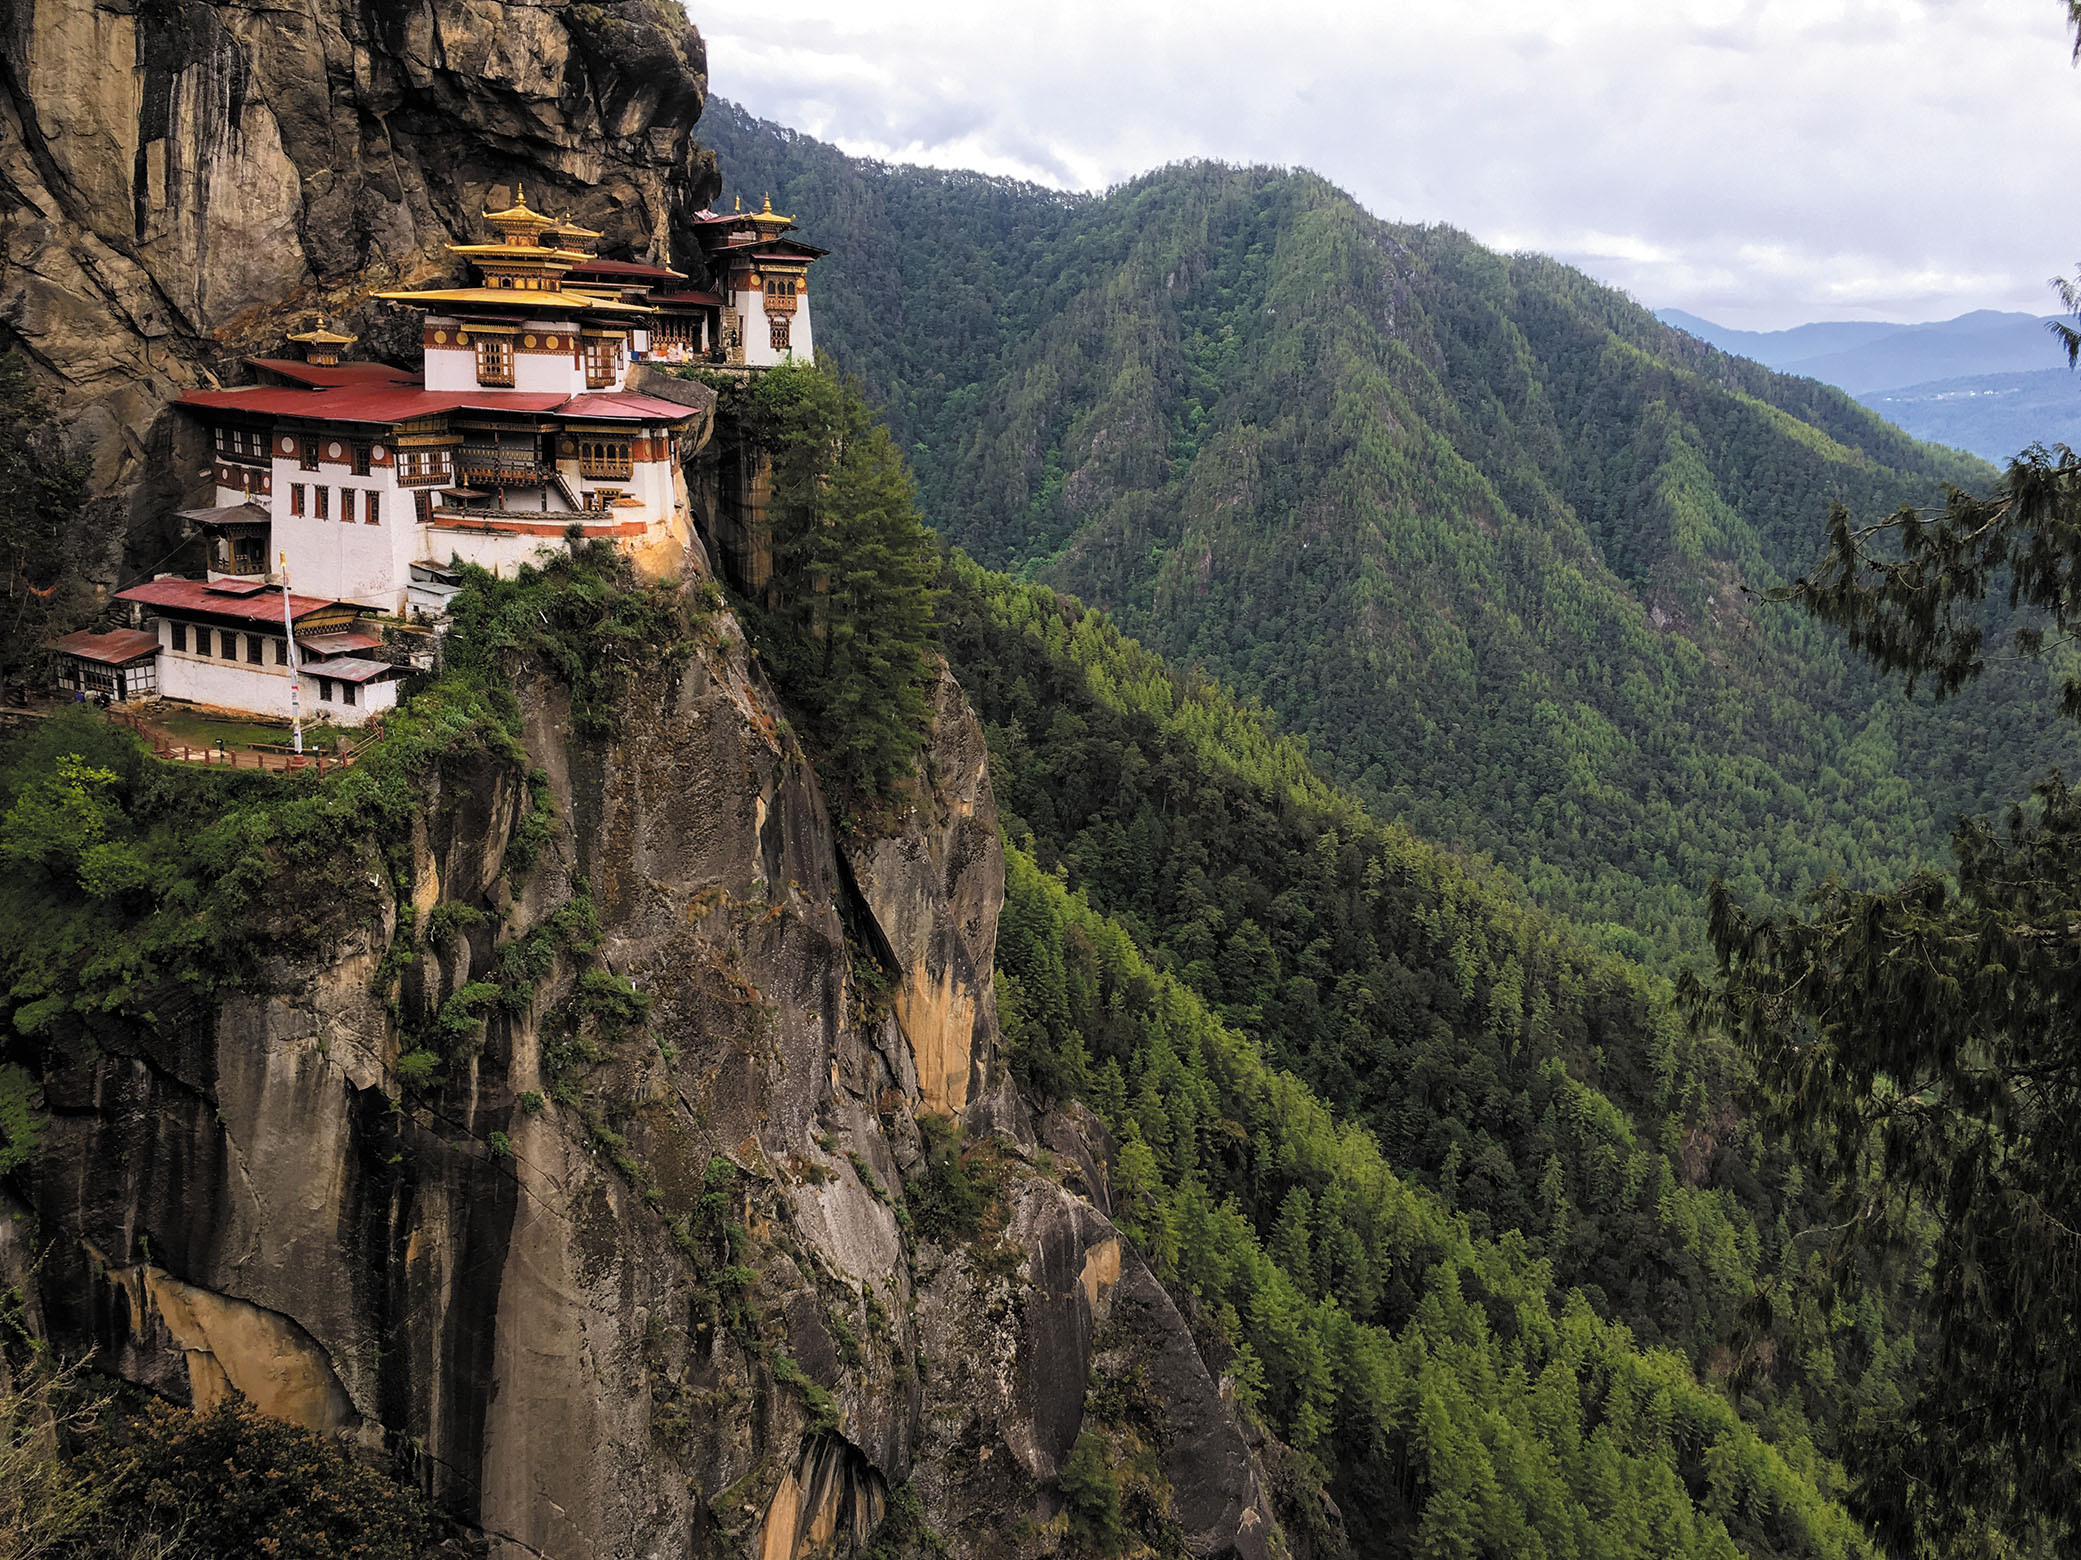 断崖絶壁に建てられた孤高の寺院。ドラゴンズネストと呼ばれ、たどり着くまでは3時間ほどの登山を要する。世界中の仏教徒が参拝に訪れる非常に神聖な場所だ。